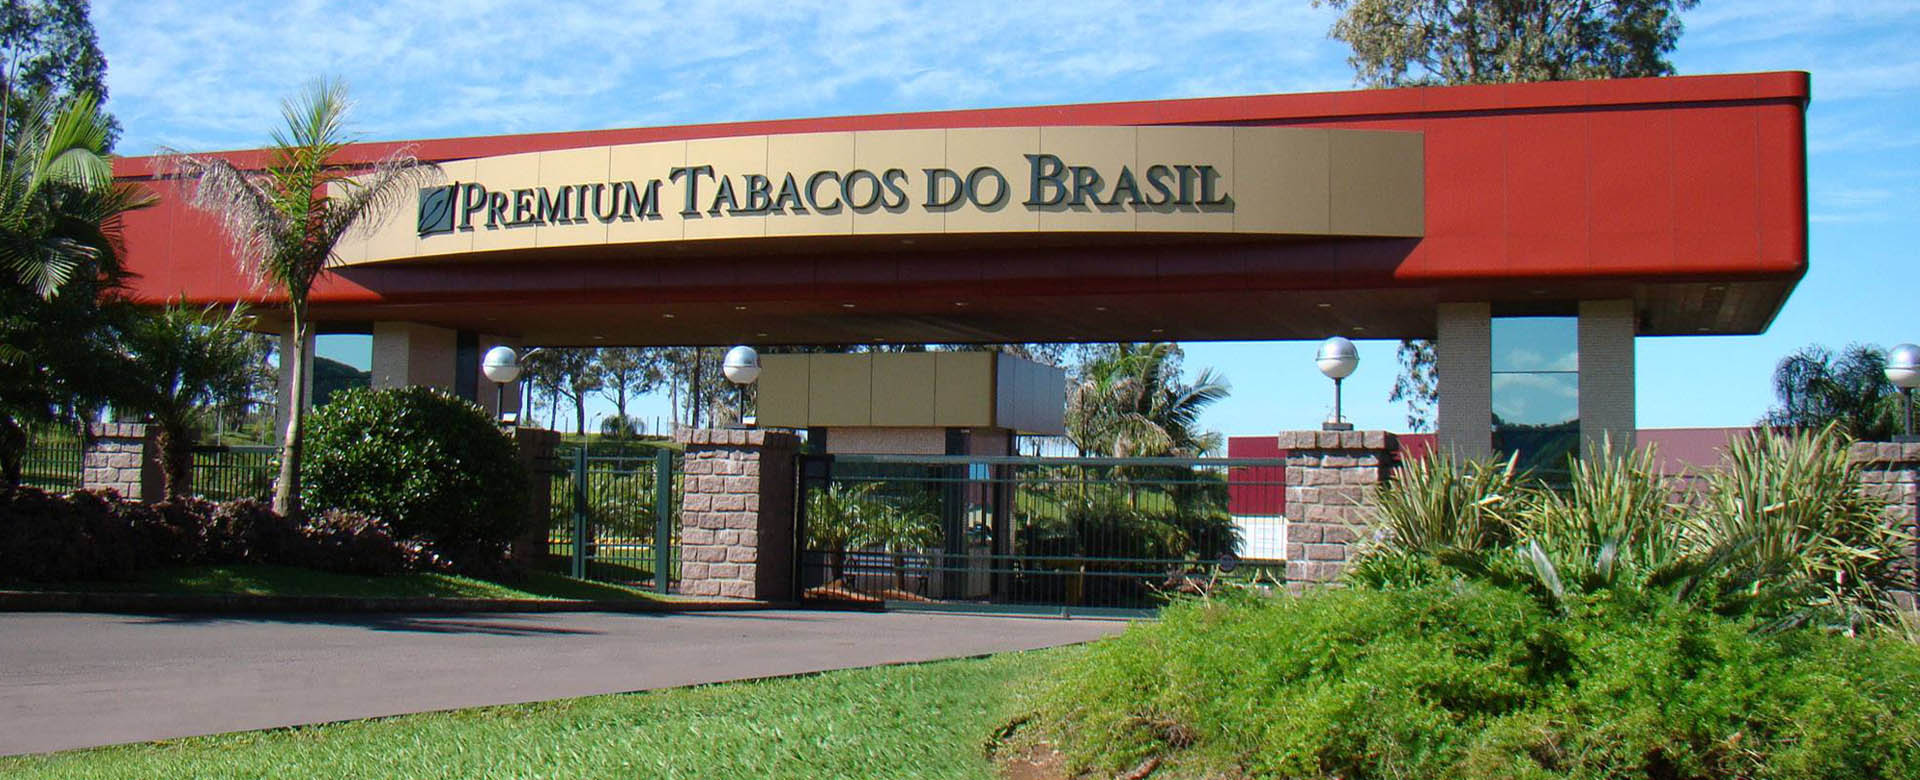 Premium Tabacos do Brasil